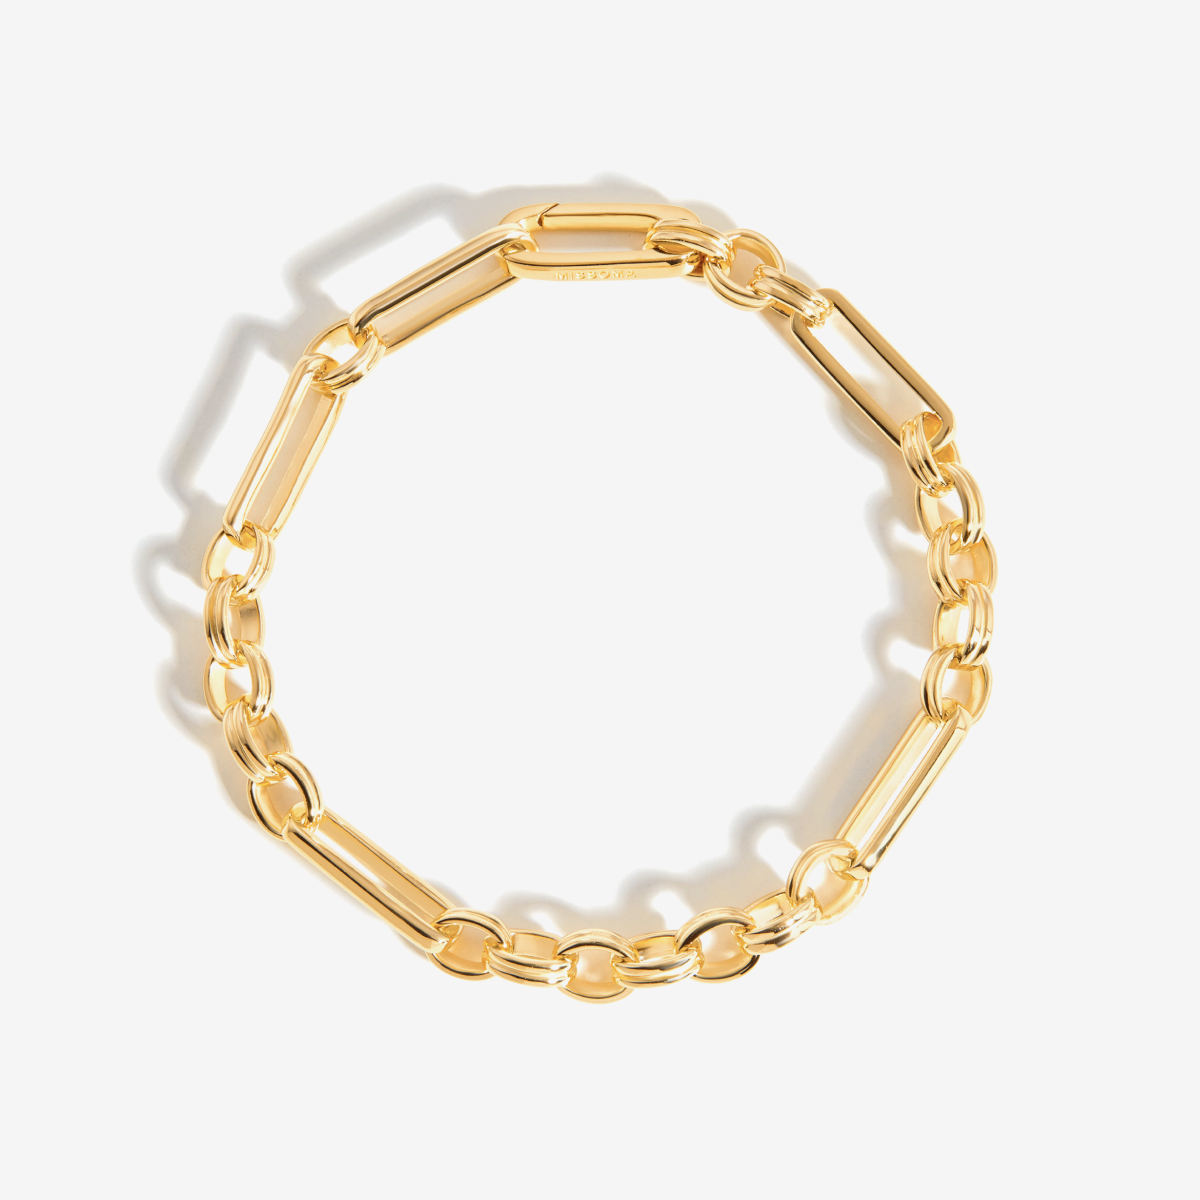 Axiom Chain Bracelet – Armbänder – 18k vergoldet